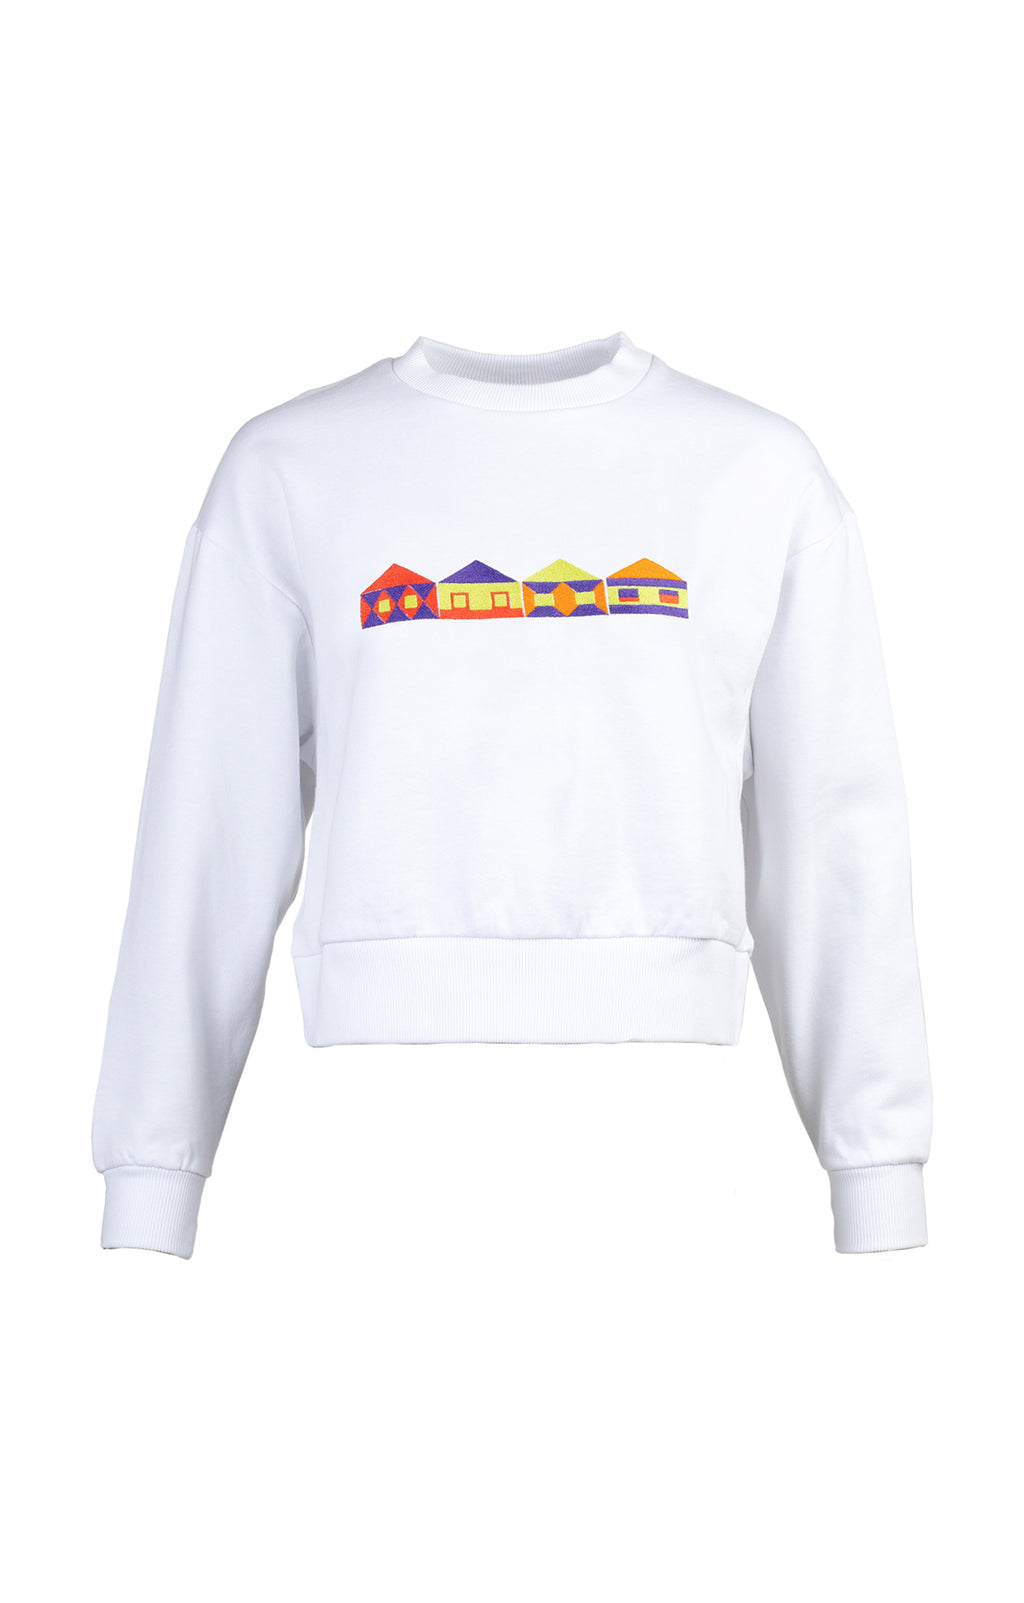 MARTHA embroidered sweatshirt 'houses'